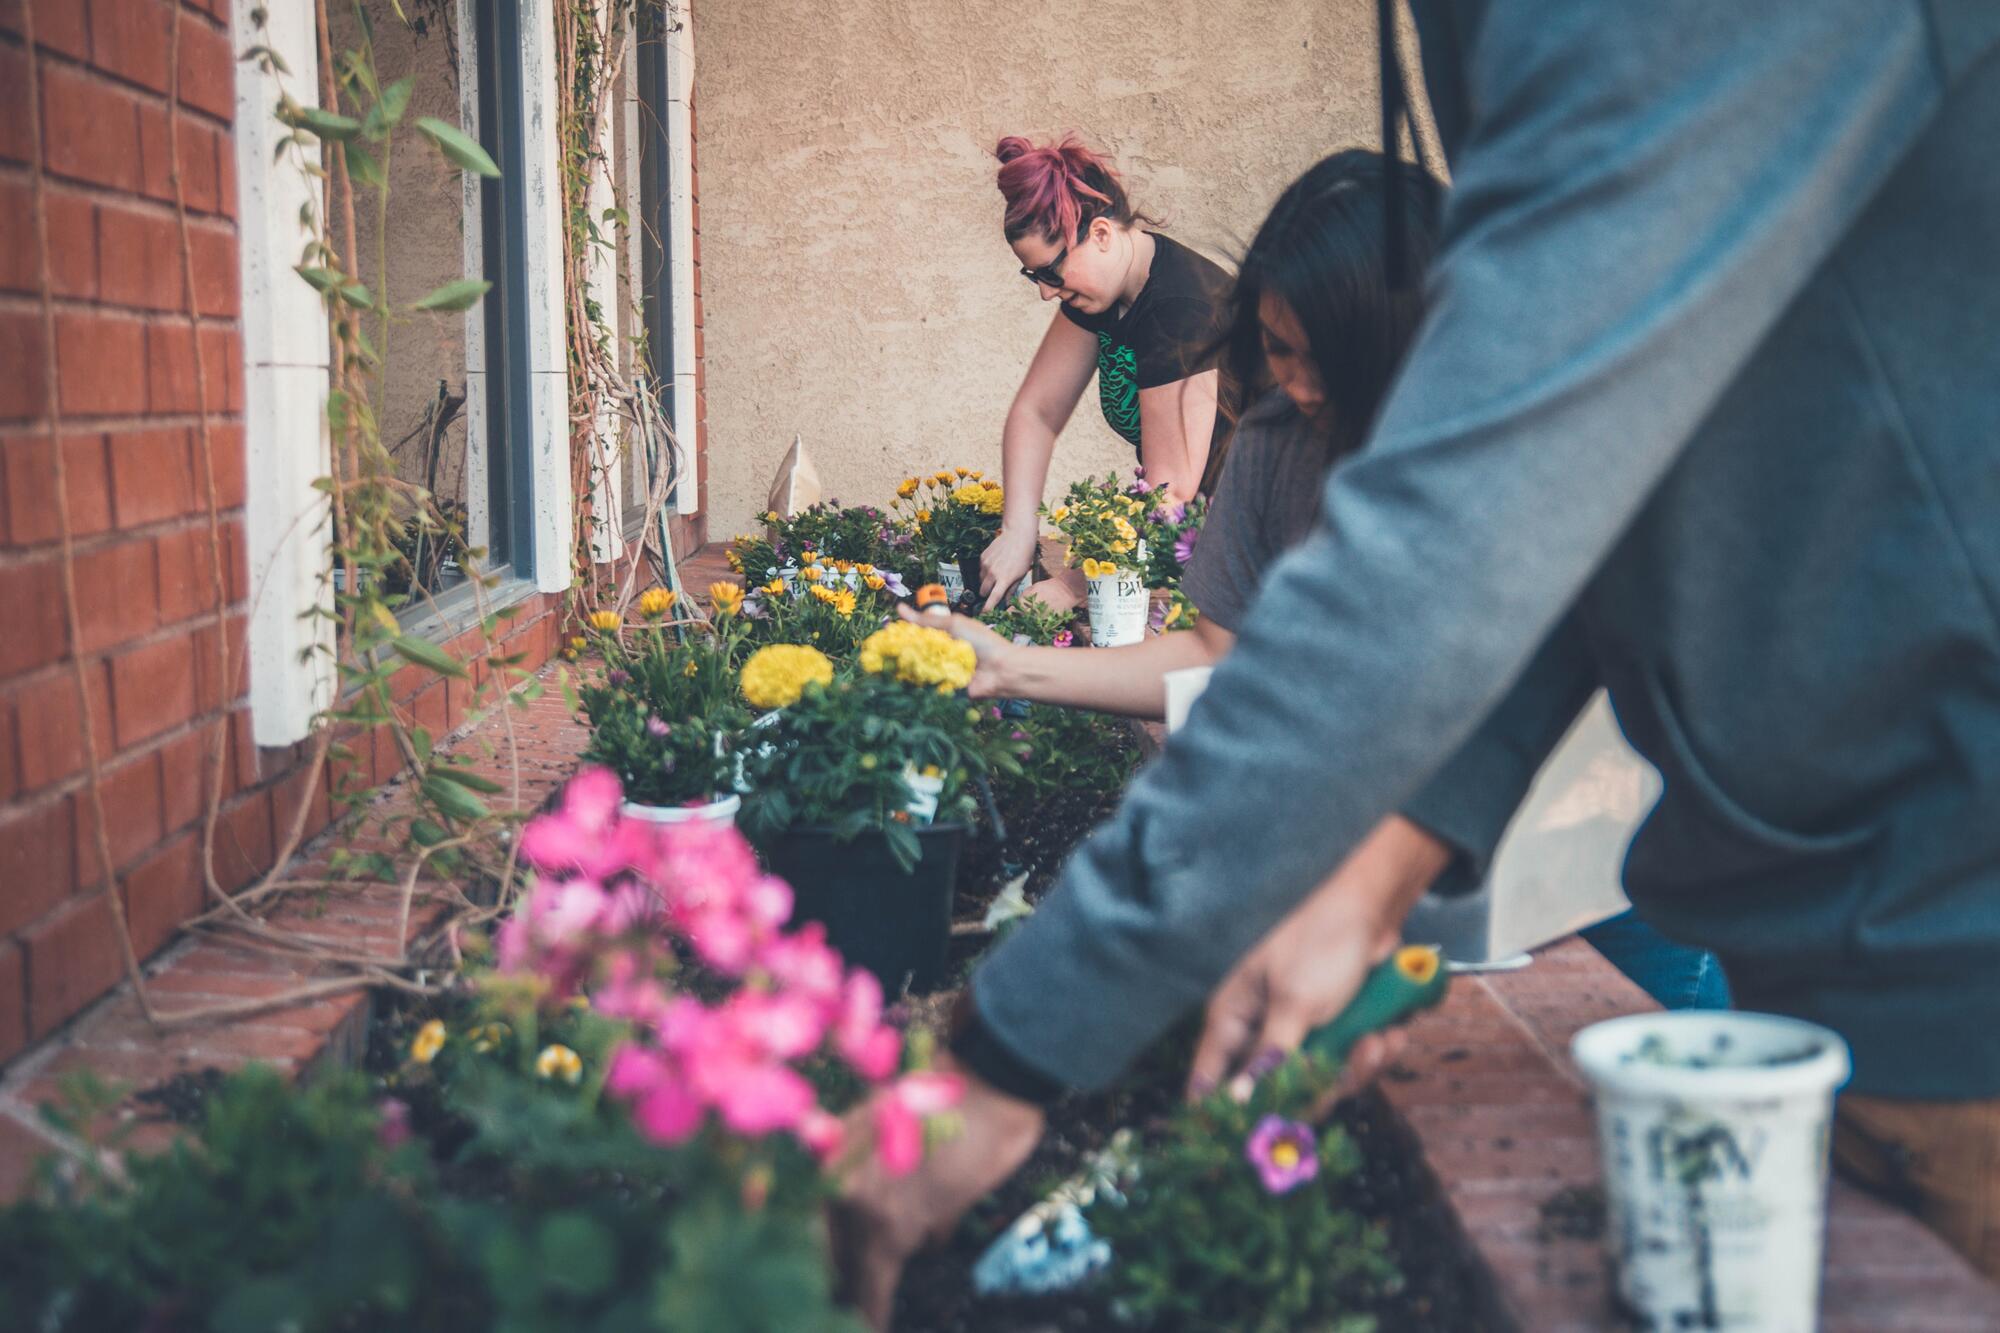 people planting flowers in a brick flowerbed